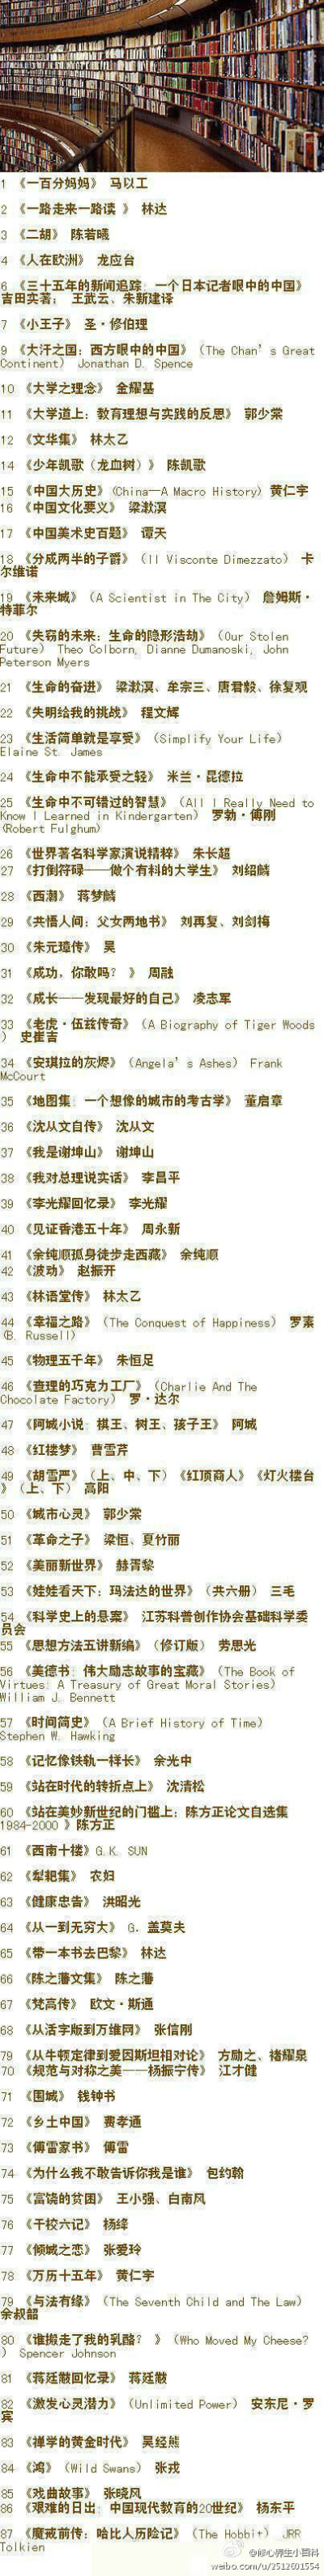 香港中文大学推荐的书单,87本书,非常值得收藏